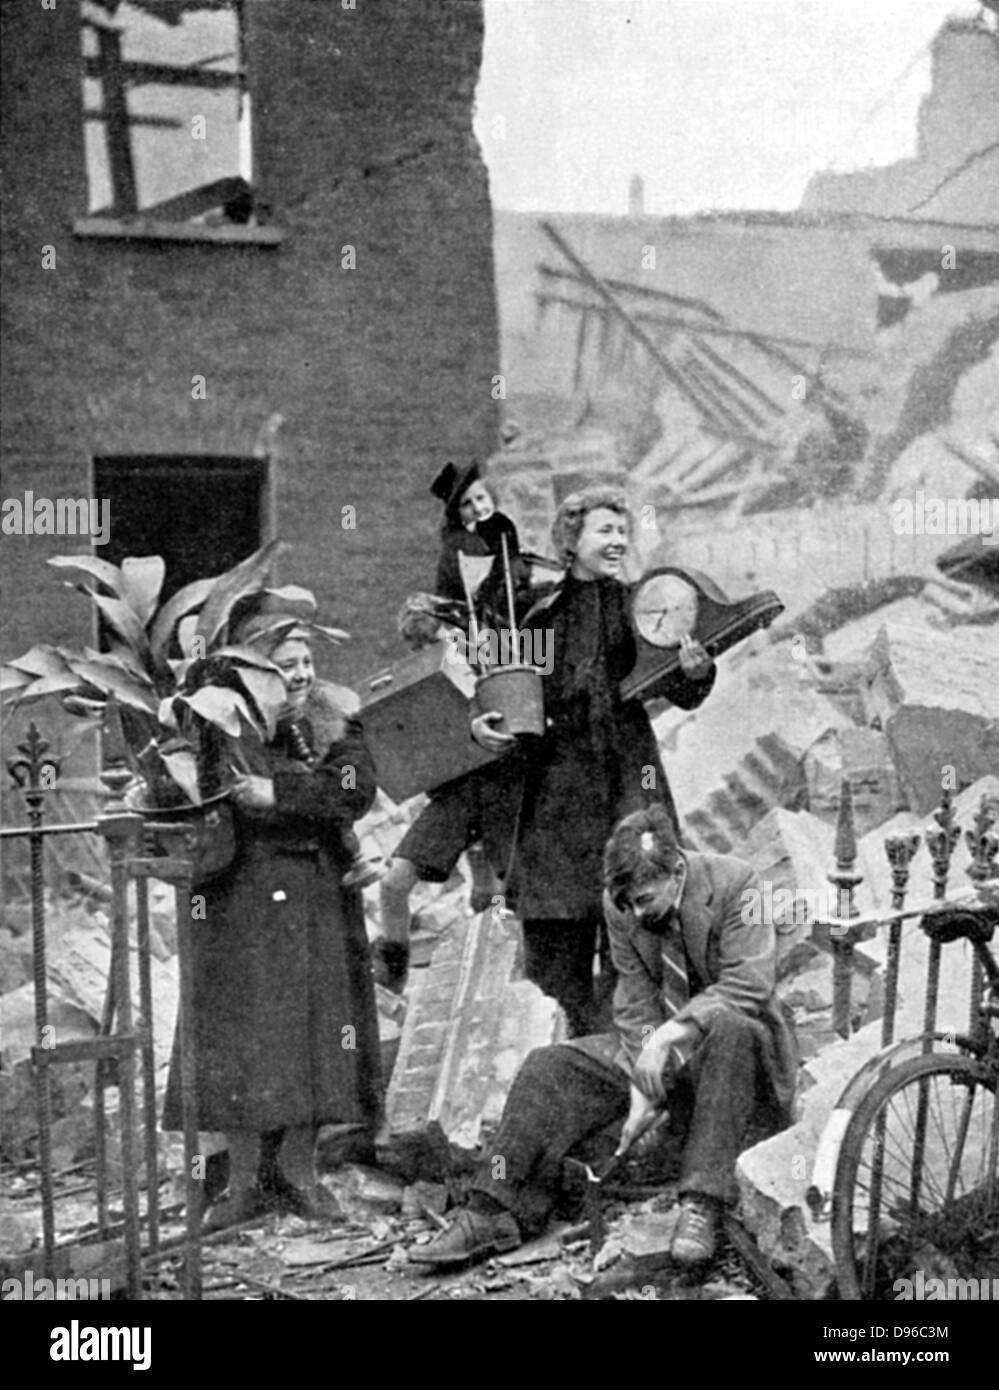 Les Londoniens sans abri par un raid de bombardement allemand pendant le Blitz de 1940 holding certains biens précieux récupérés dans les ruines et mettre sur brave, visages de sourire : octobre 1940. La Seconde Guerre mondiale. Banque D'Images